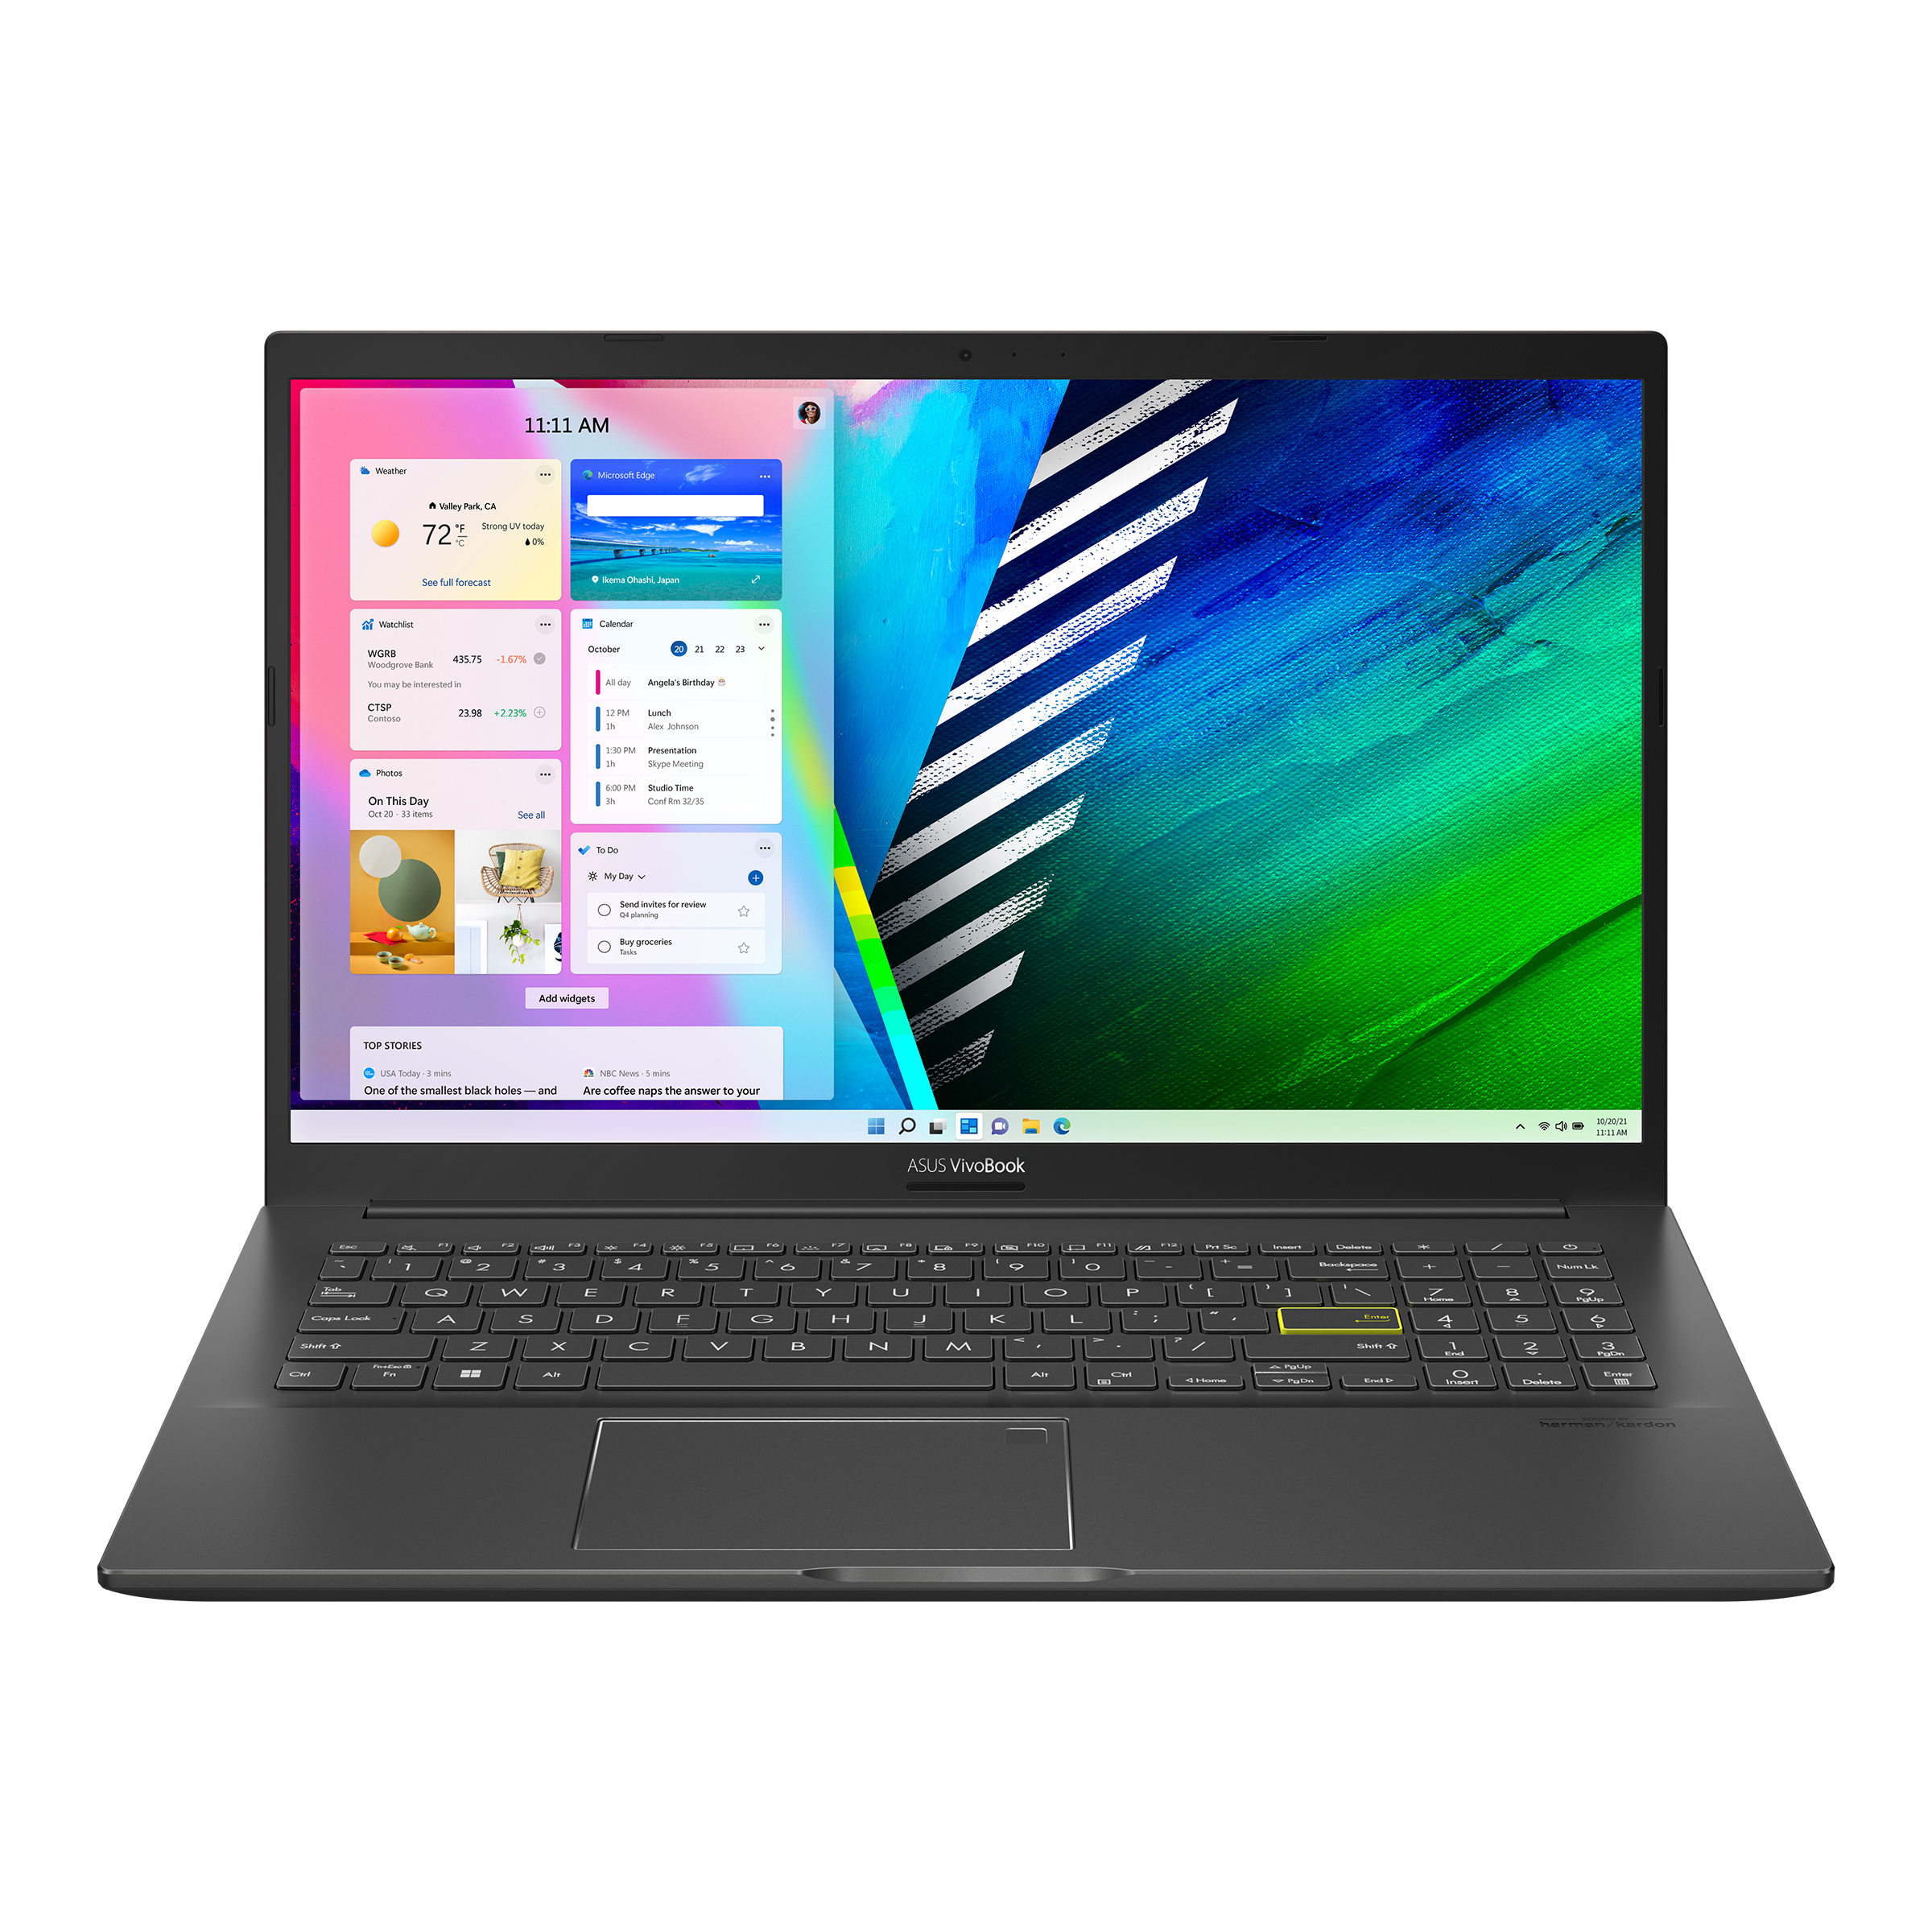 Vivobook 15 OLED K513 (11th gen intel)